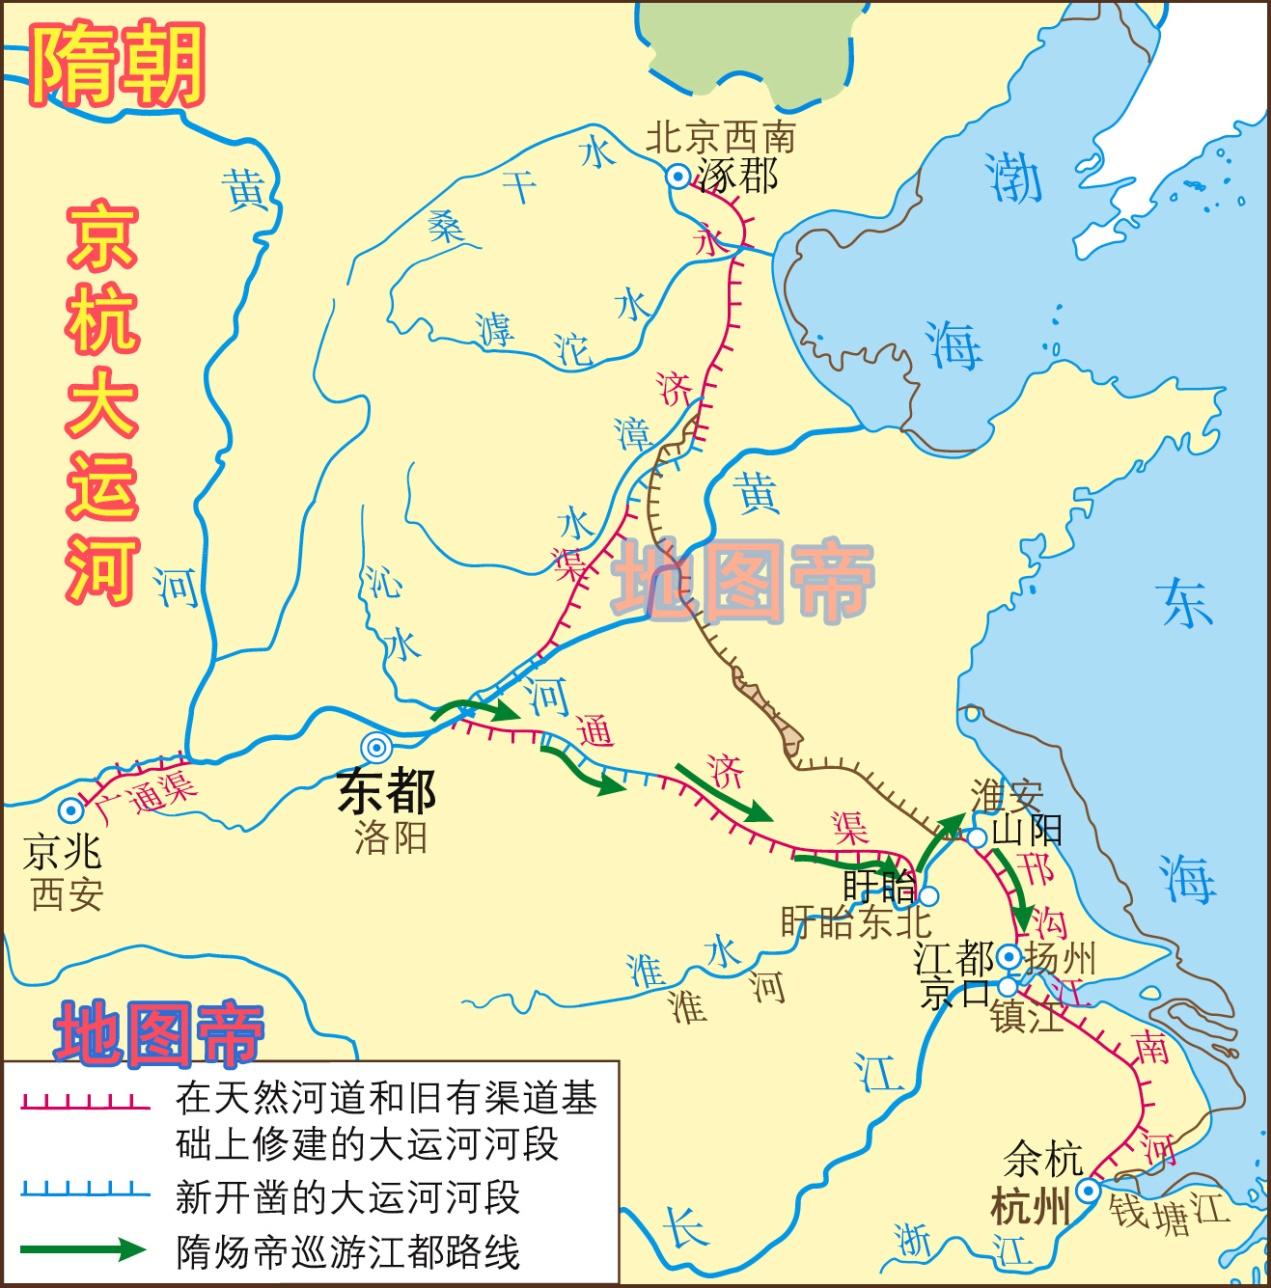 原创 隋炀帝杨广为何要修建大运河,而且把终点放在杭州